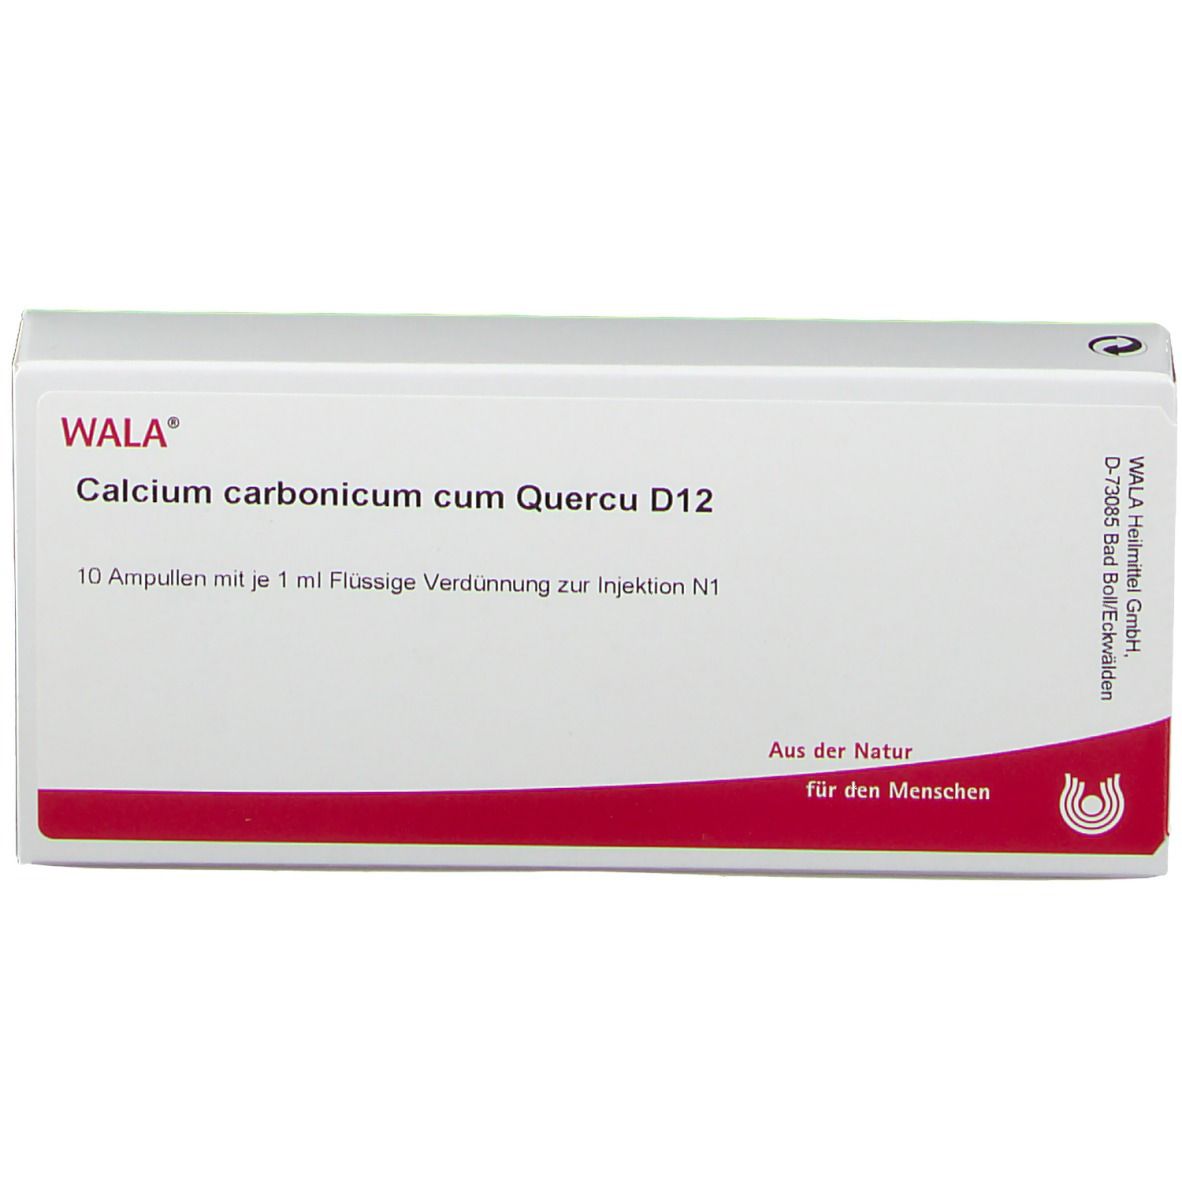 WALA® Calcium carbonicum cum Quercu D 12